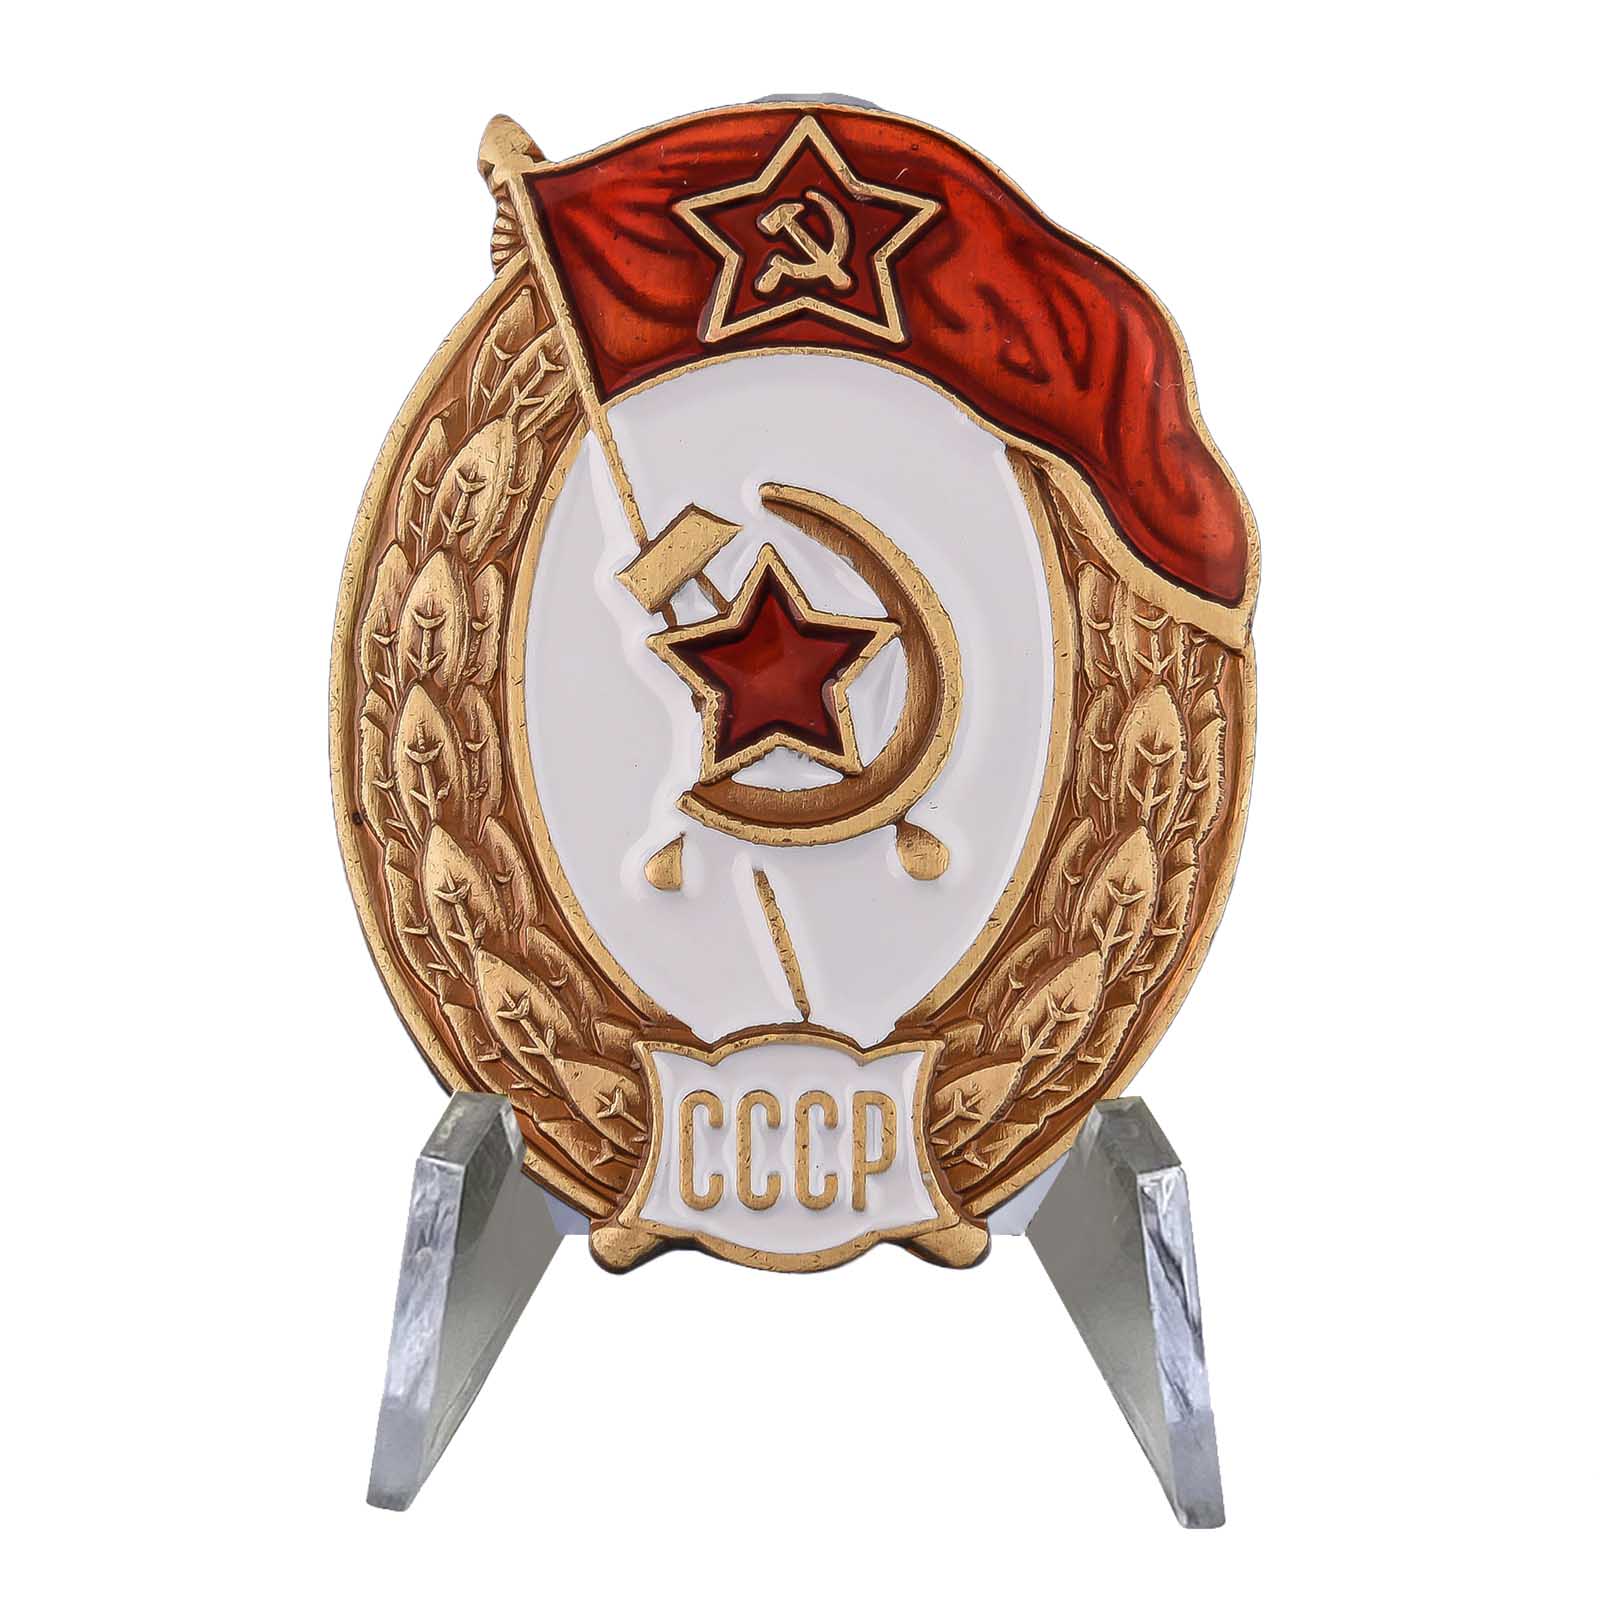 Знак СССР об окончании Интендантских, финансовых или пожарных военных училищ на подставке